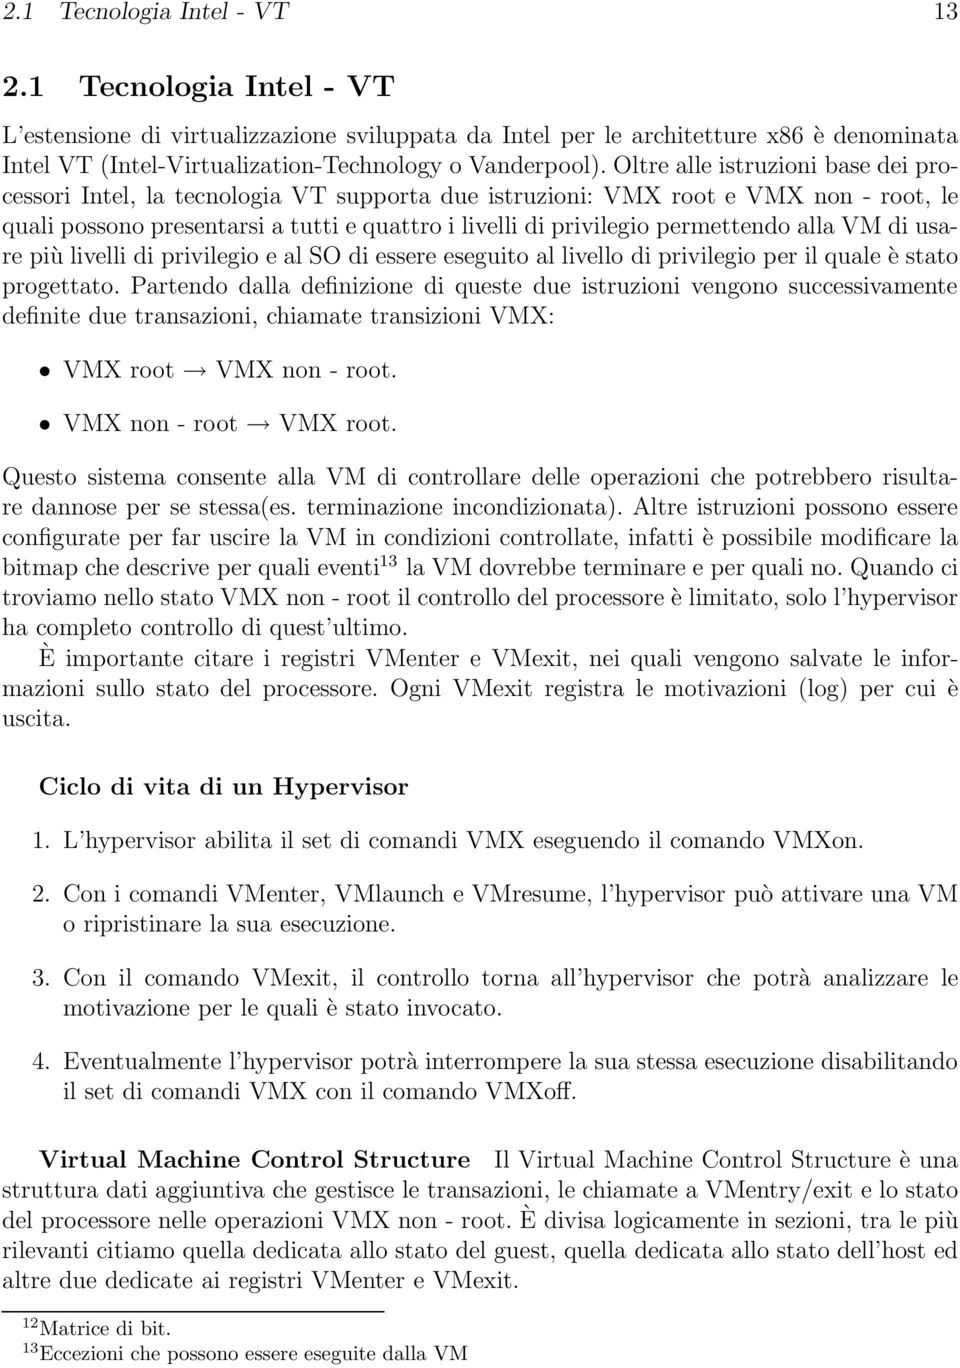 Oltre alle istruzioni base dei processori Intel, la tecnologia VT supporta due istruzioni: VMX root e VMX non - root, le quali possono presentarsi a tutti e quattro i livelli di privilegio